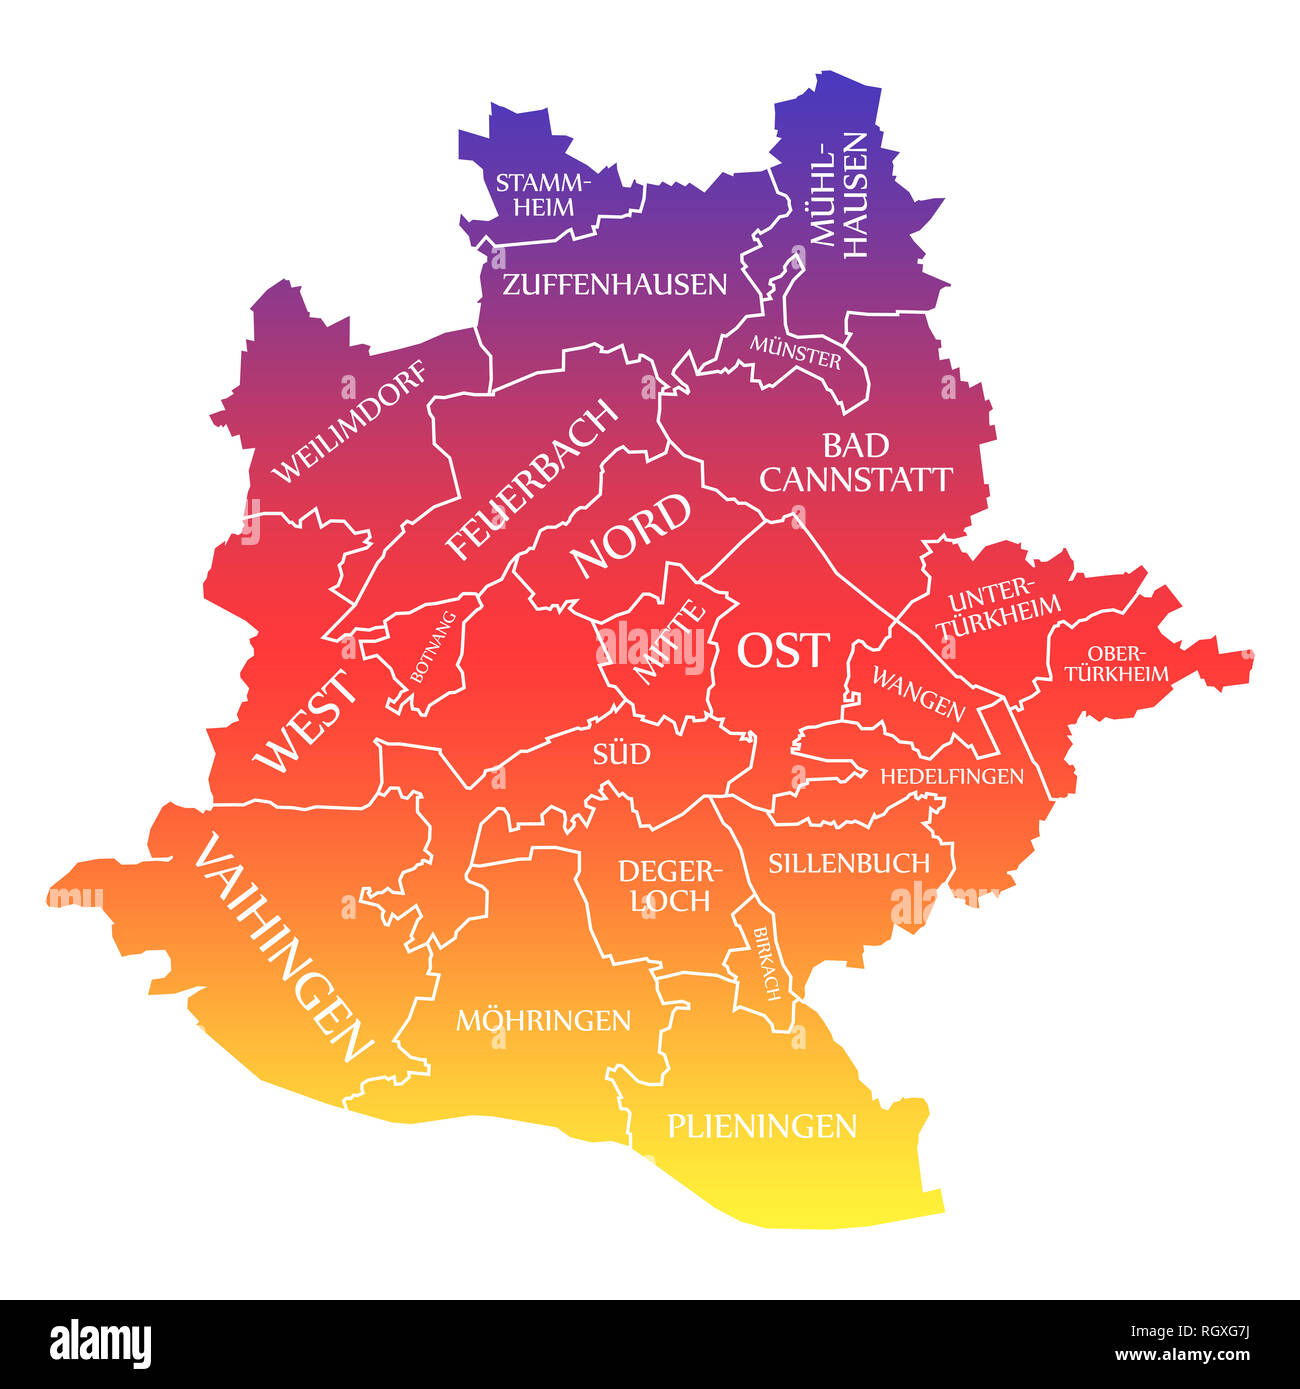 Stuttgart map immagini e fotografie stock ad alta risoluzione - Alamy